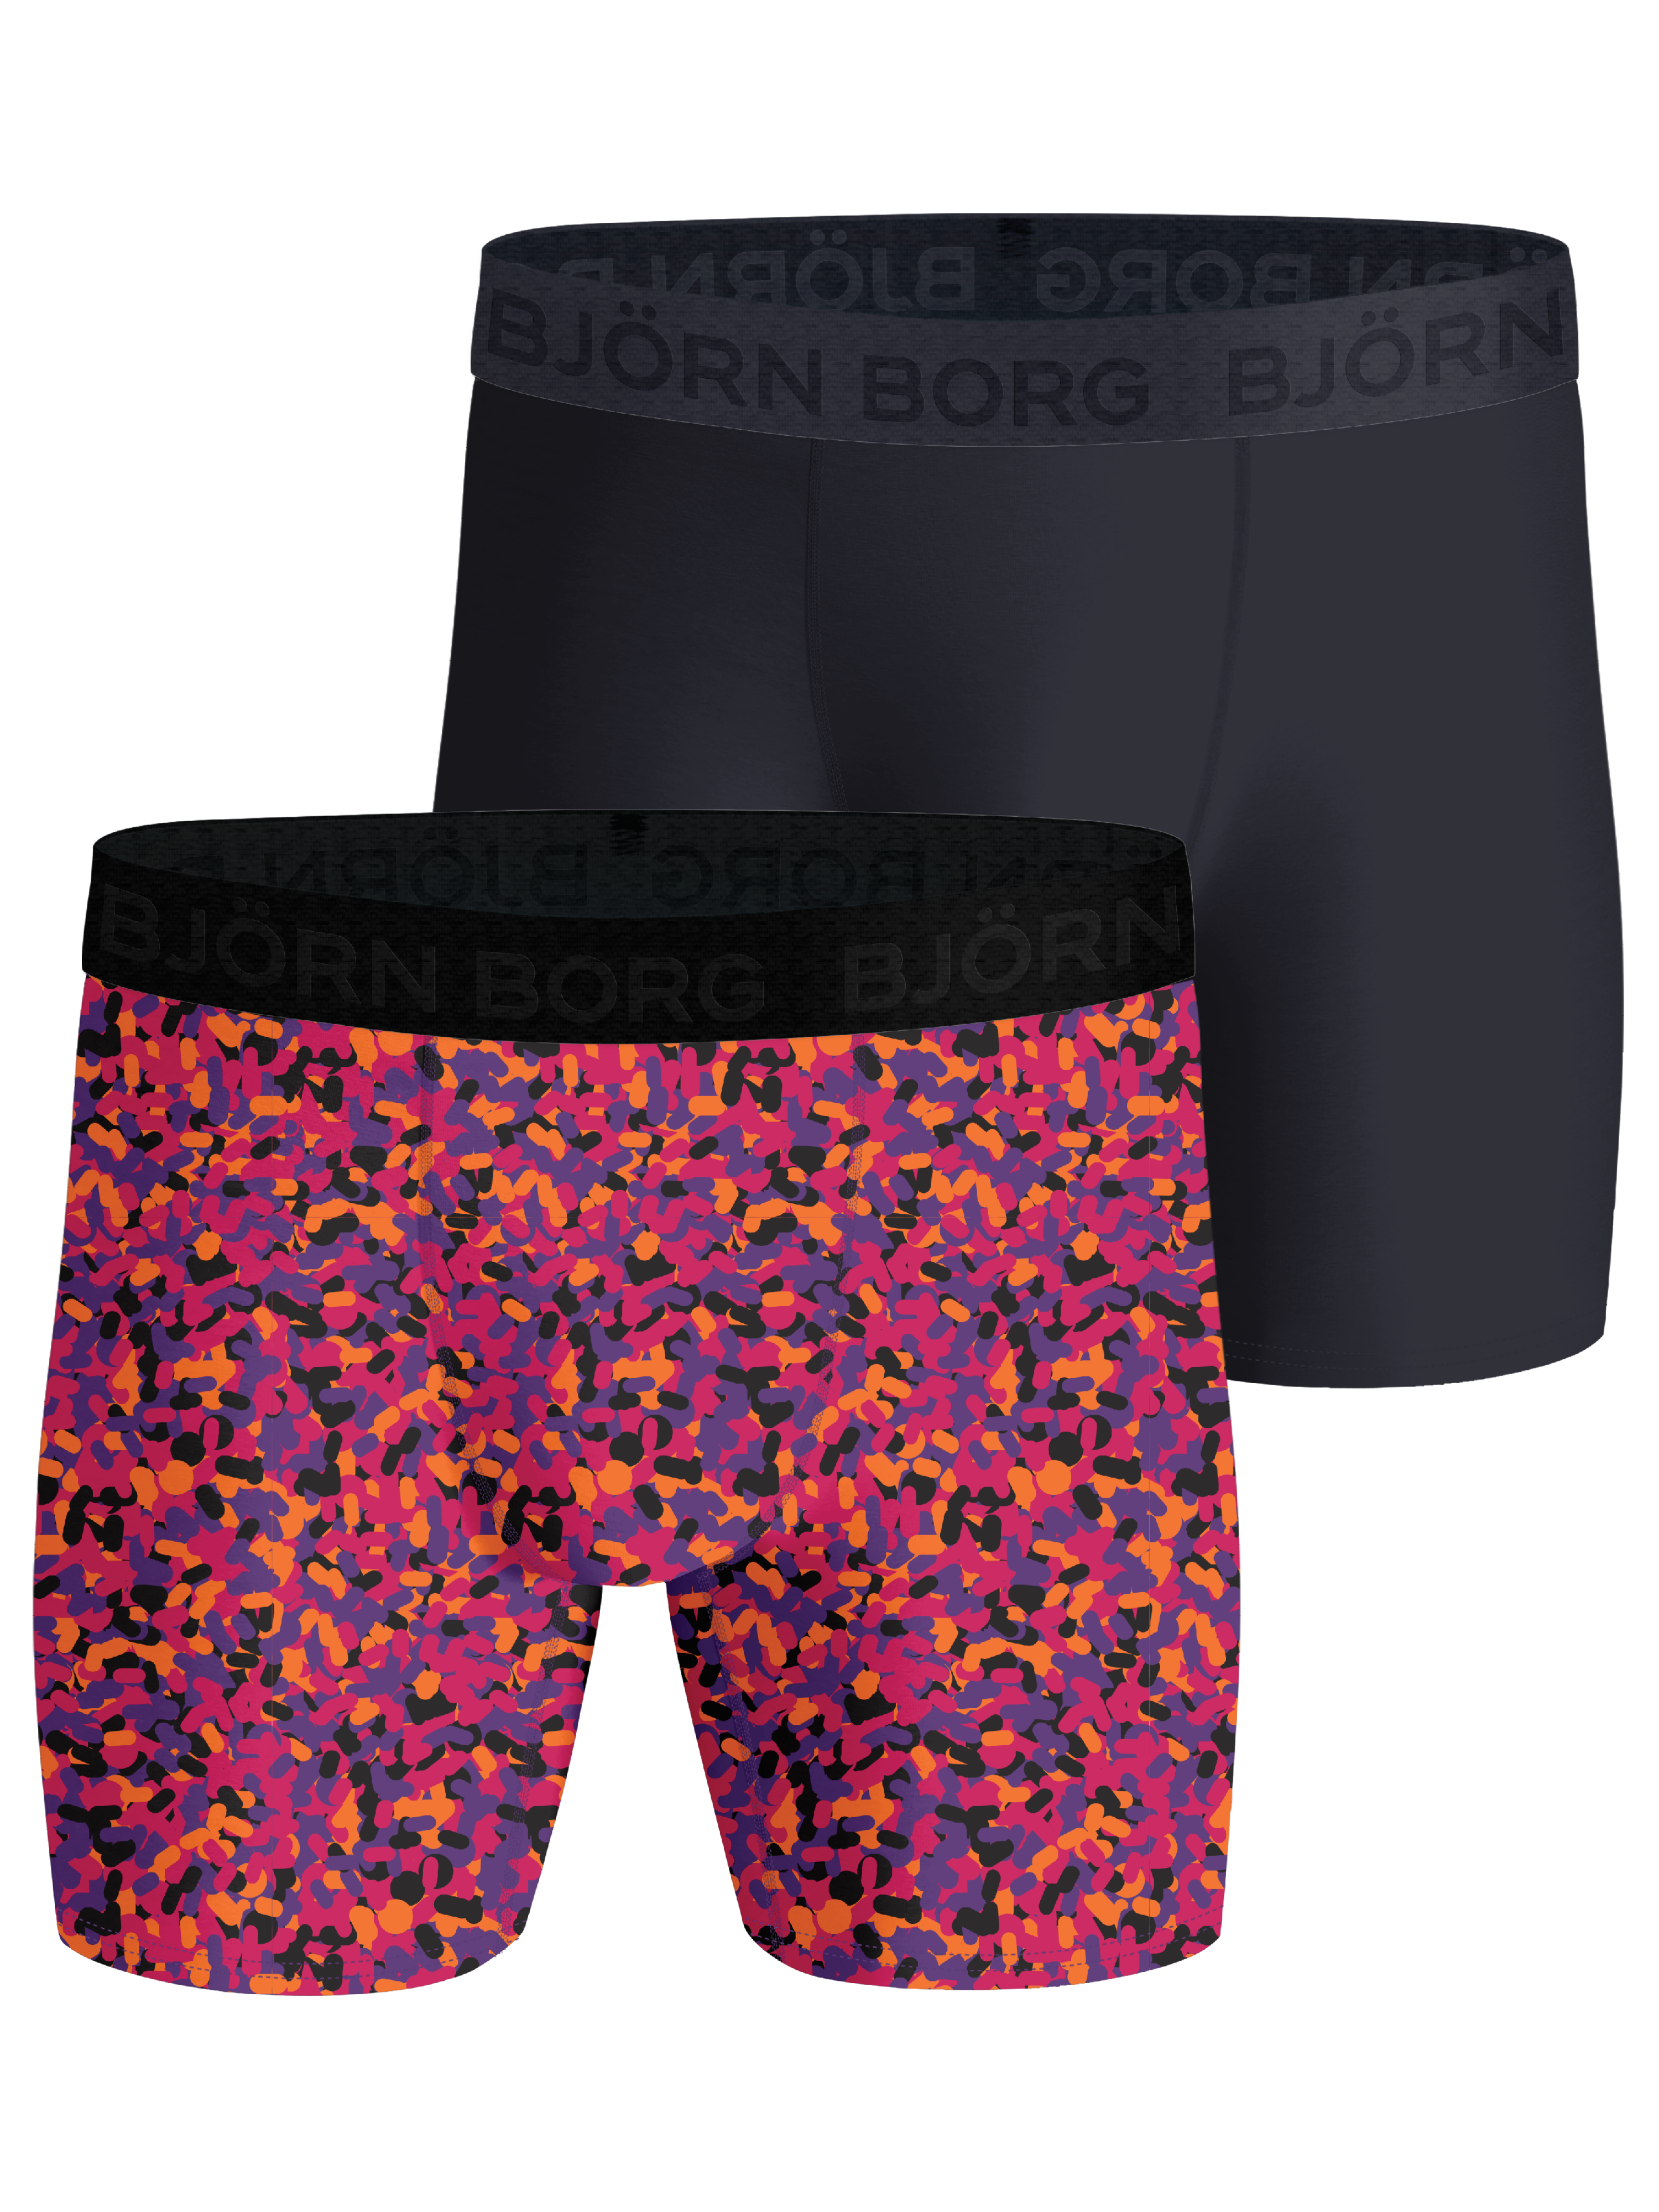 Björn Borg Men's Performance Boxer 2p Multipack 1, Buy Björn Borg Men's Performance  Boxer 2p Multipack 1 here